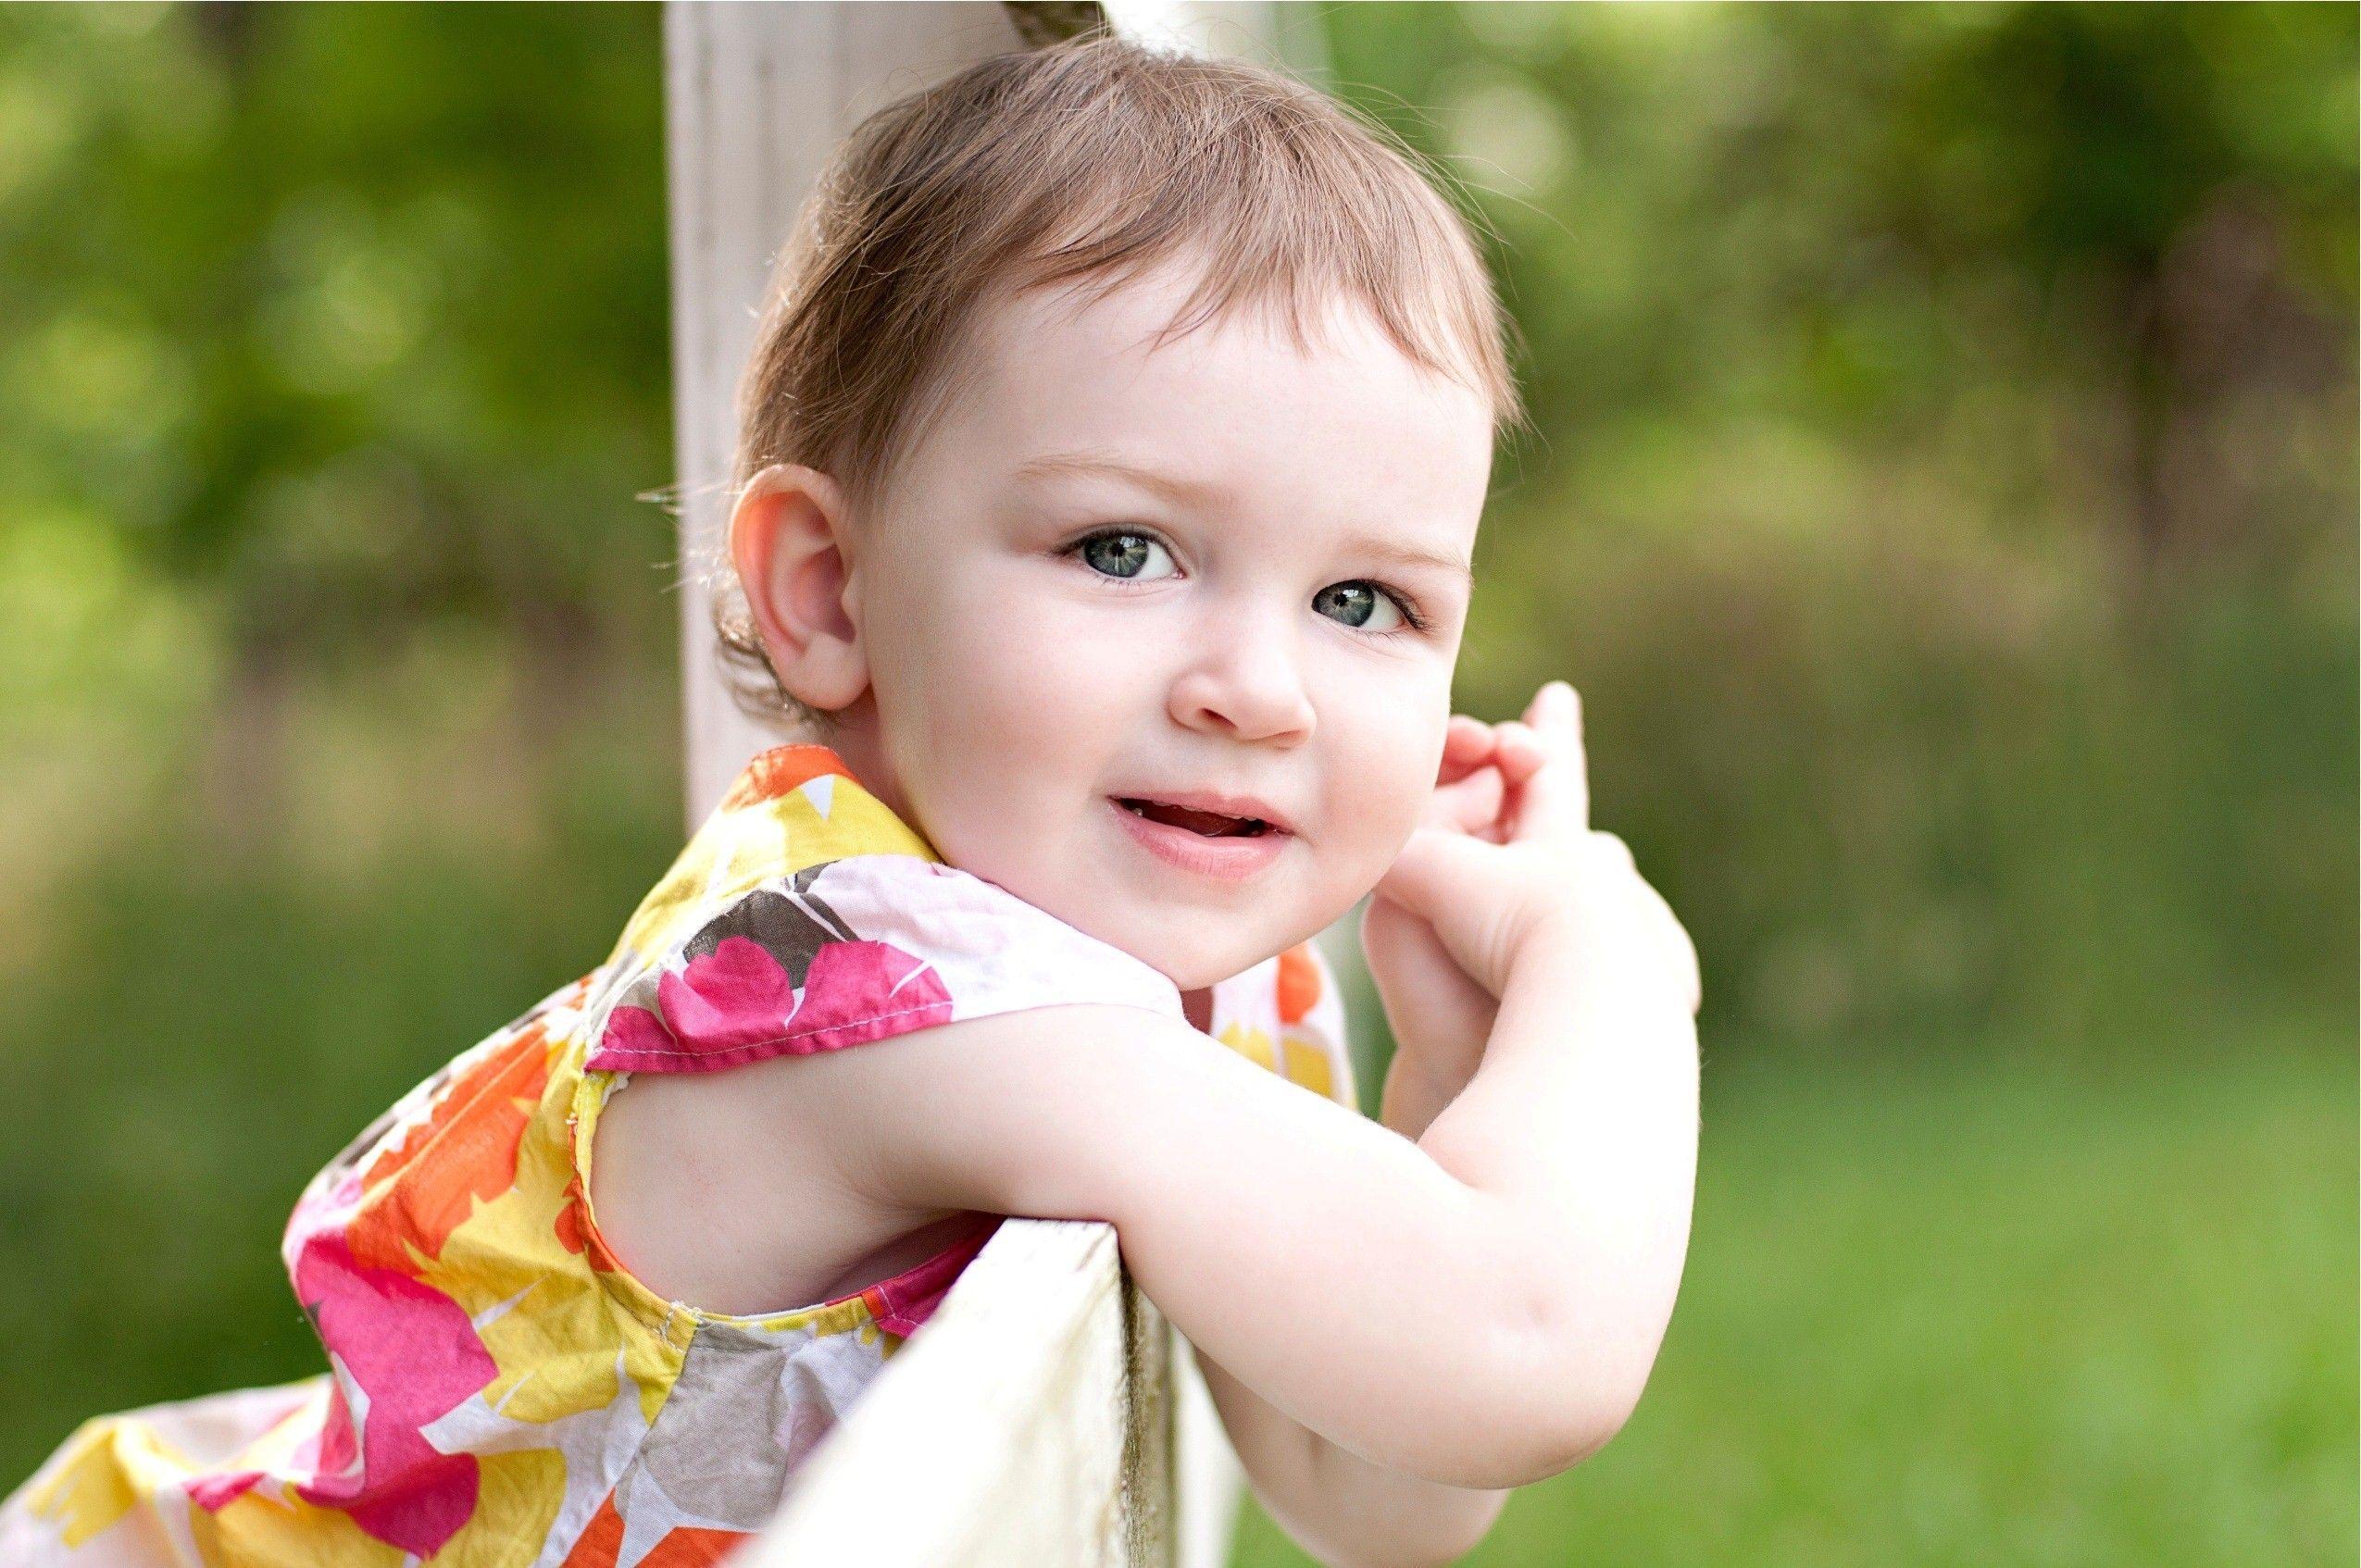 Cute Baby Girl Wallpaper. Free Download HD Beautiful Desktop Image